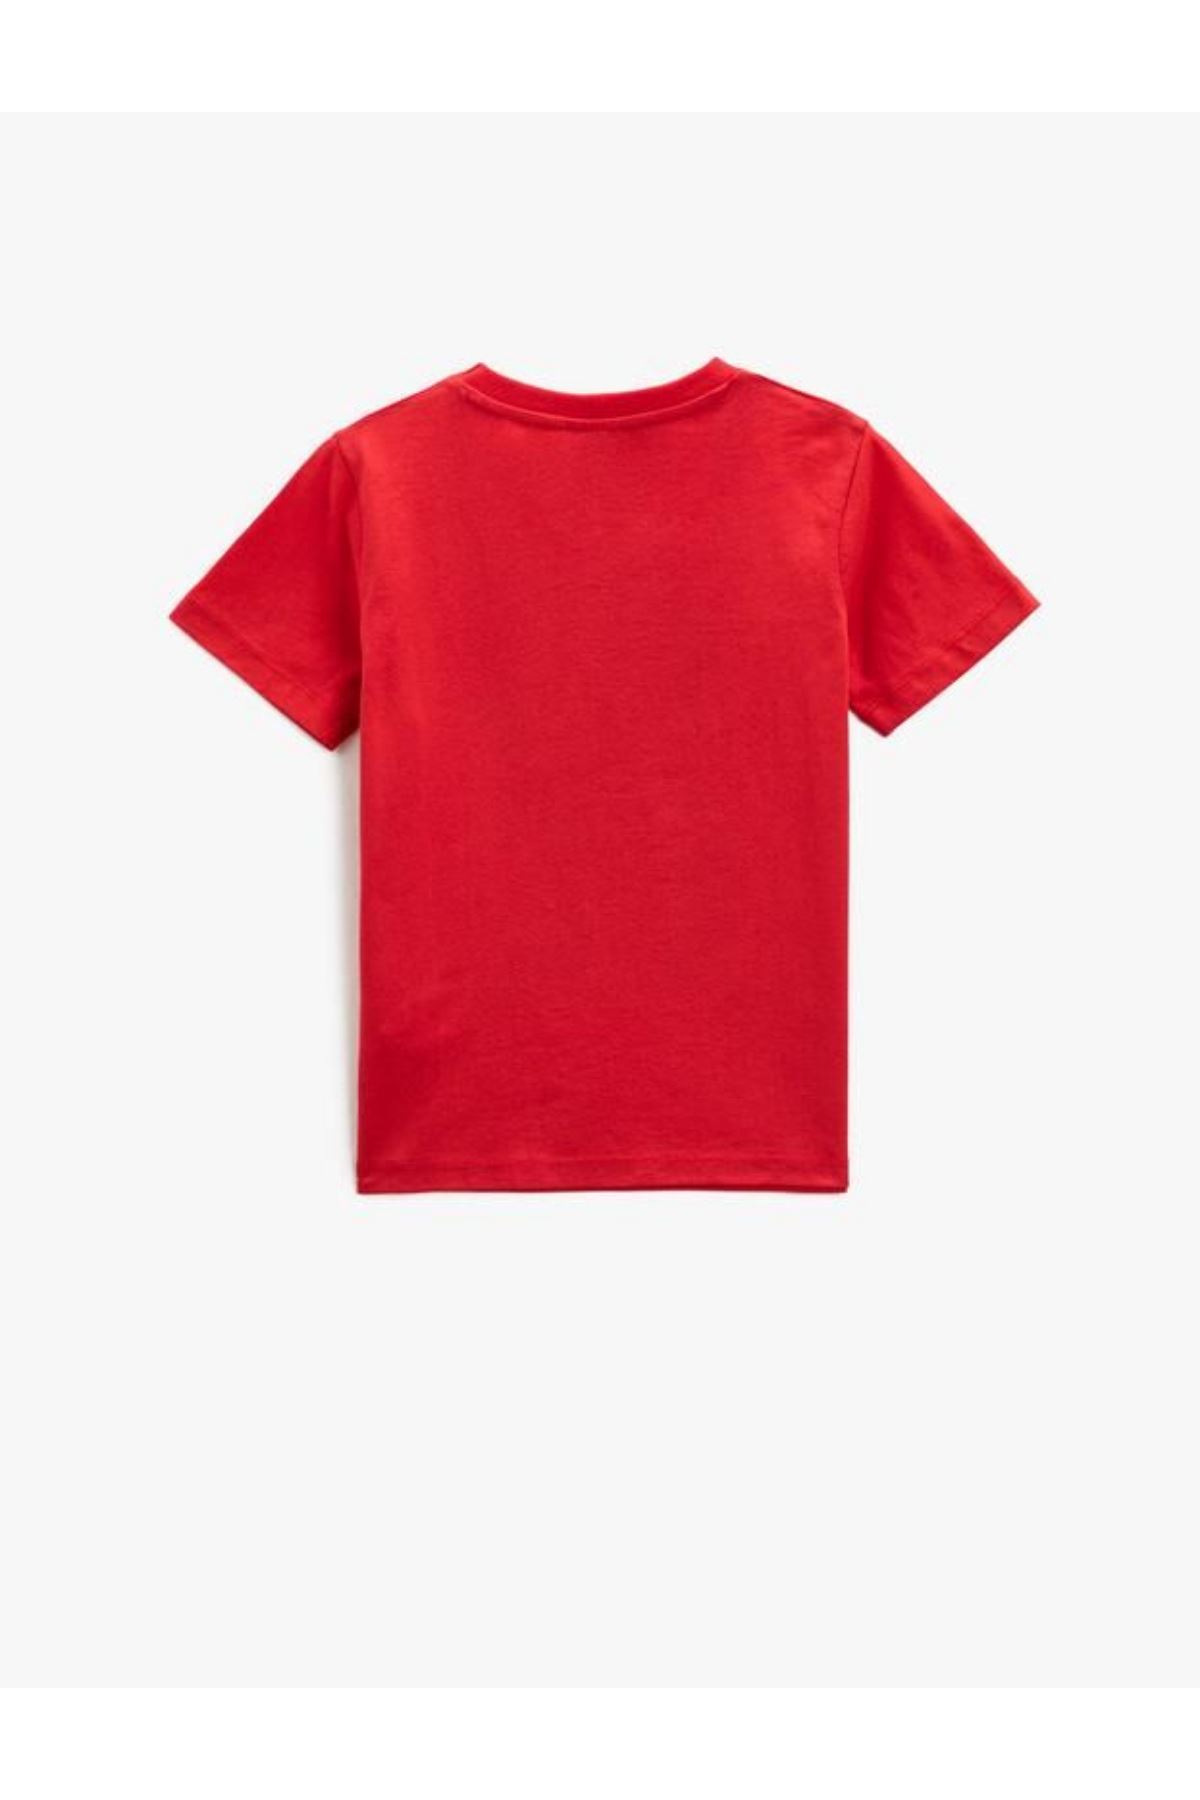 Koton Erkek Çocuk Kırmızı Tişört - 3SKB10160TK